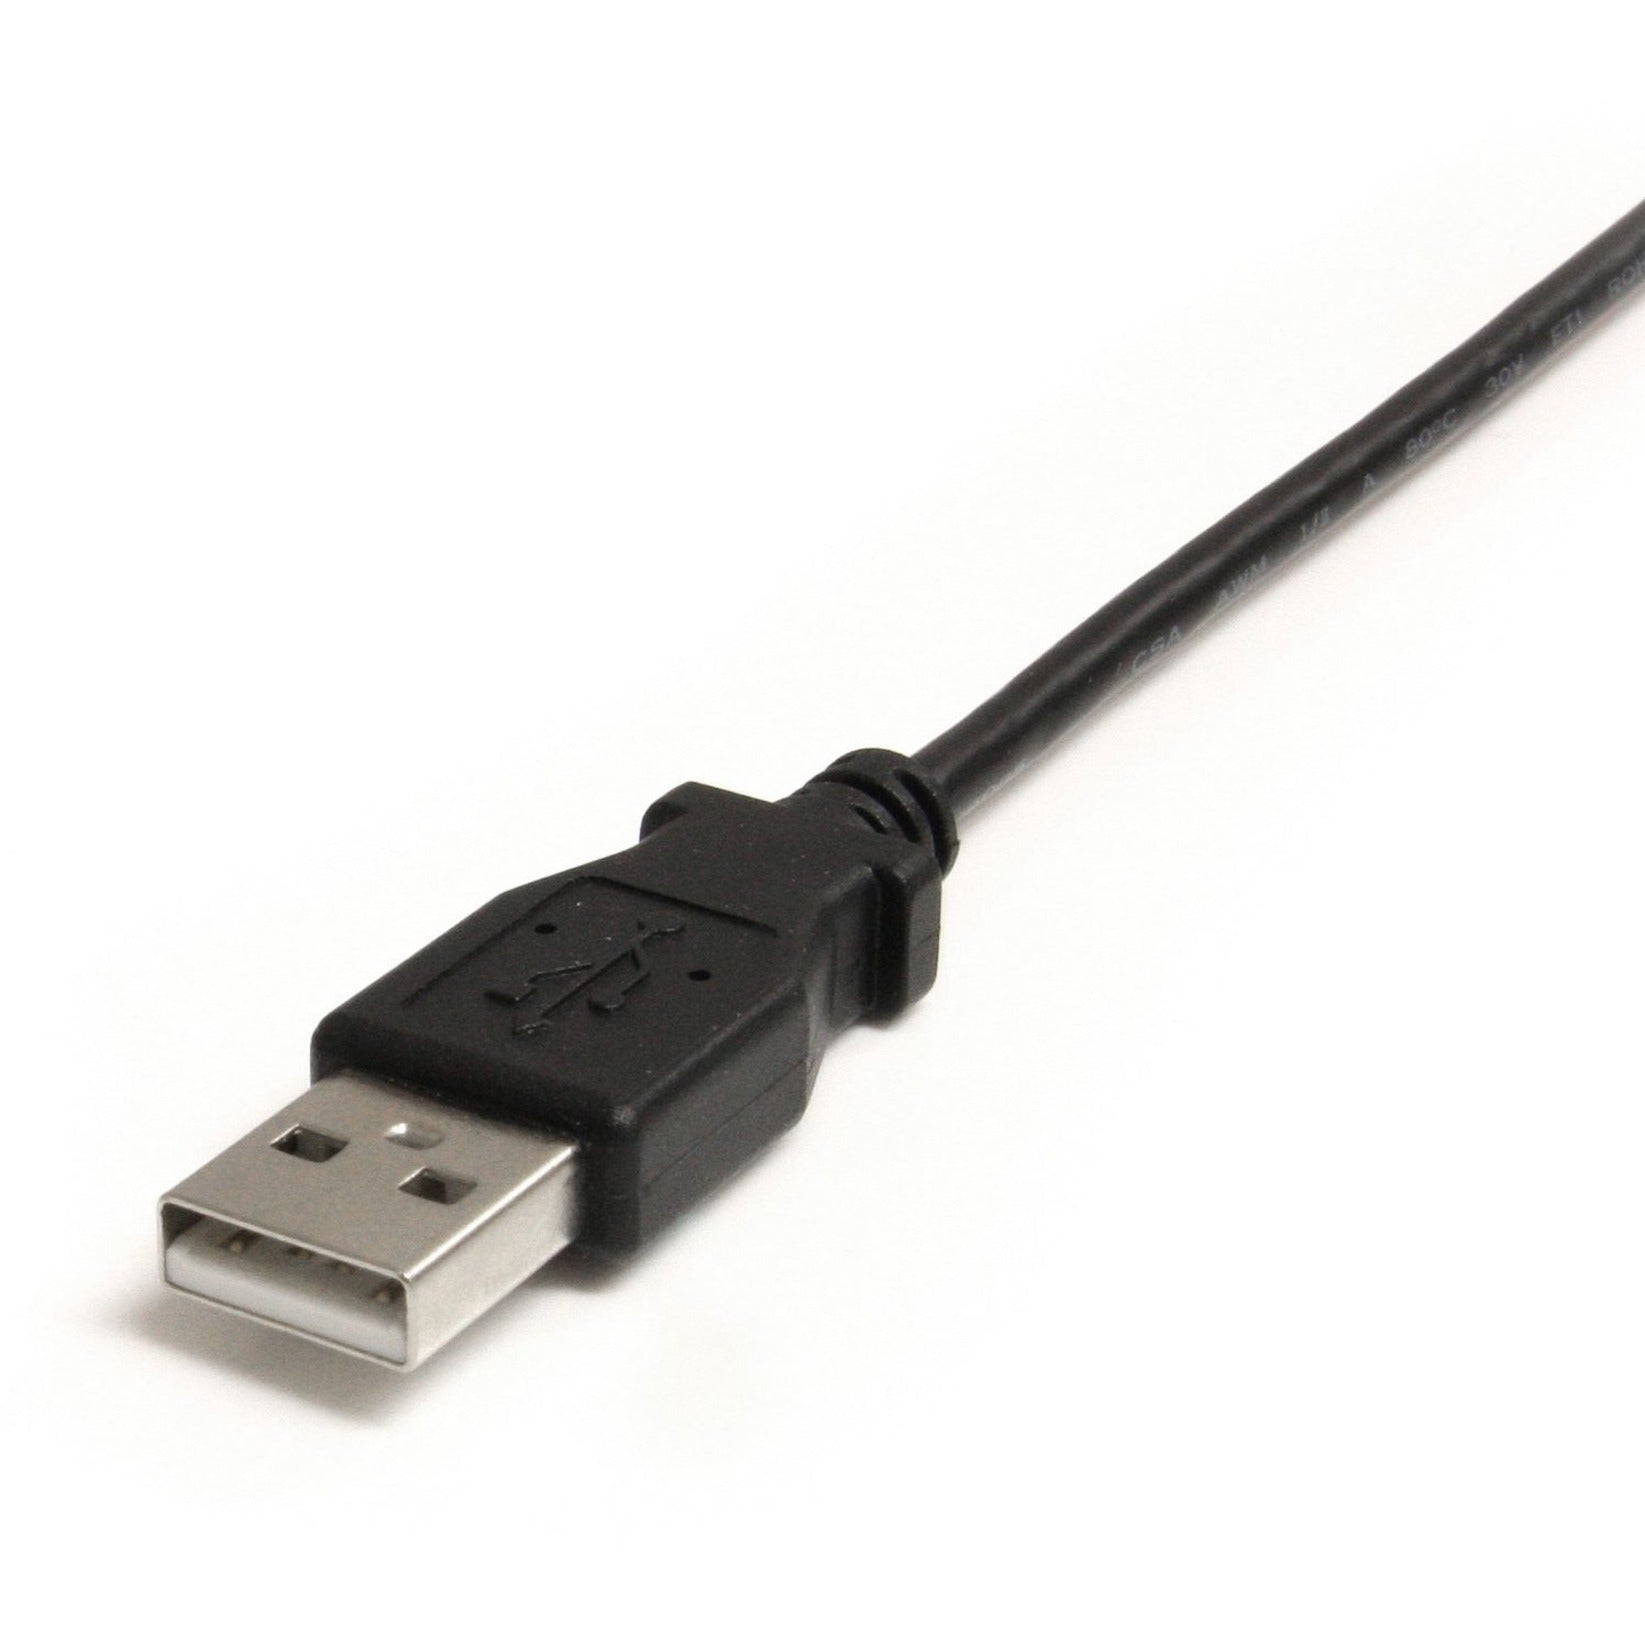 StarTech.com Cavo Mini USB da 6 ft - A a Mini B ad angolo retto Caricamento Stampato Tasso di Trasferimento Dati di 480 Mbit/s